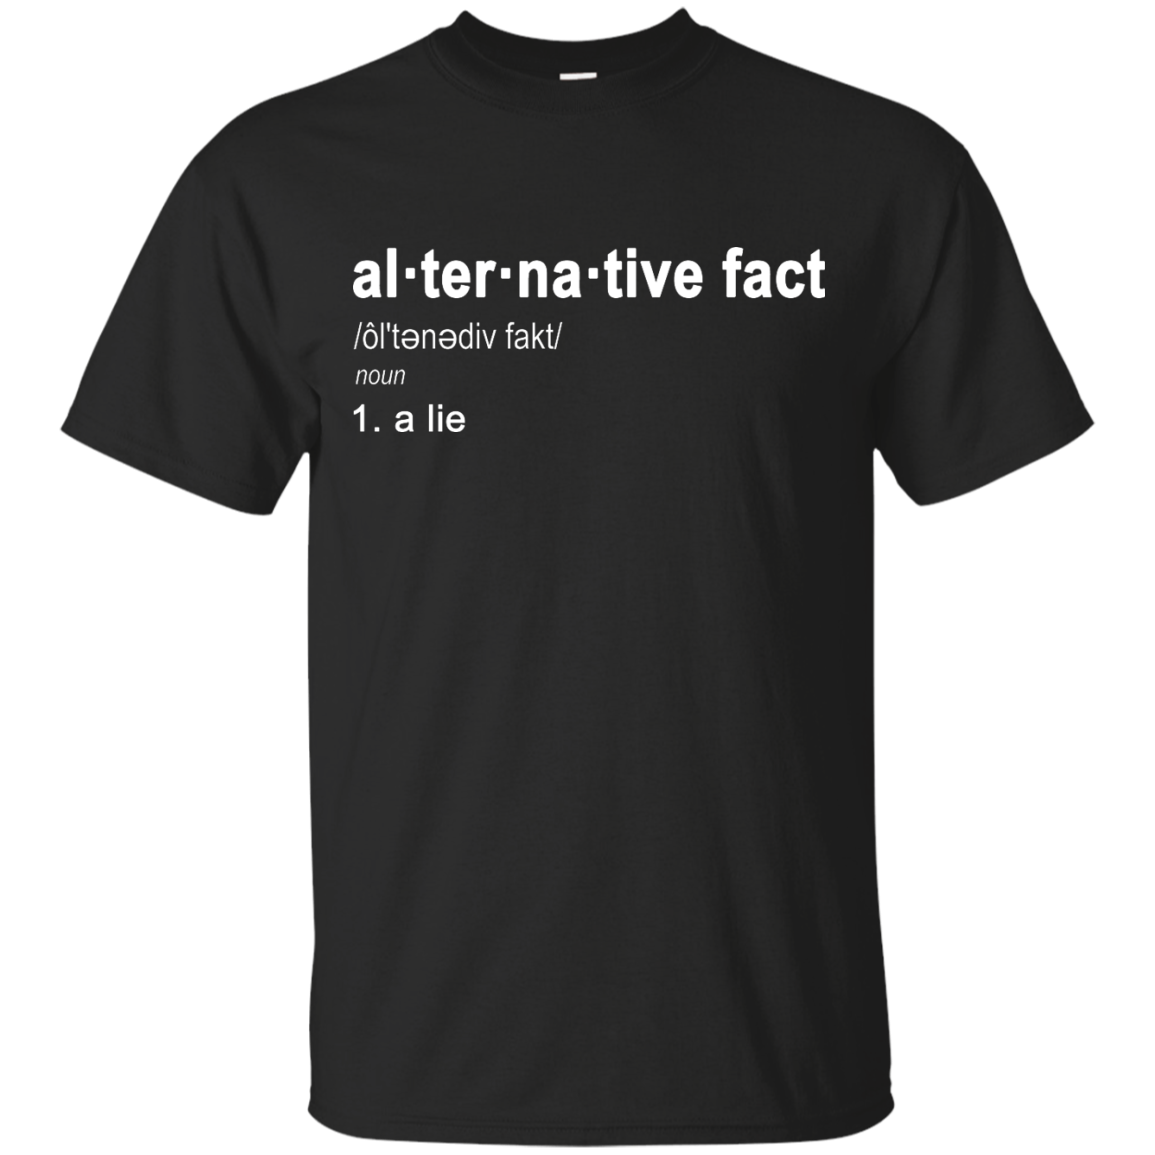 Alternative Fact definition shirt